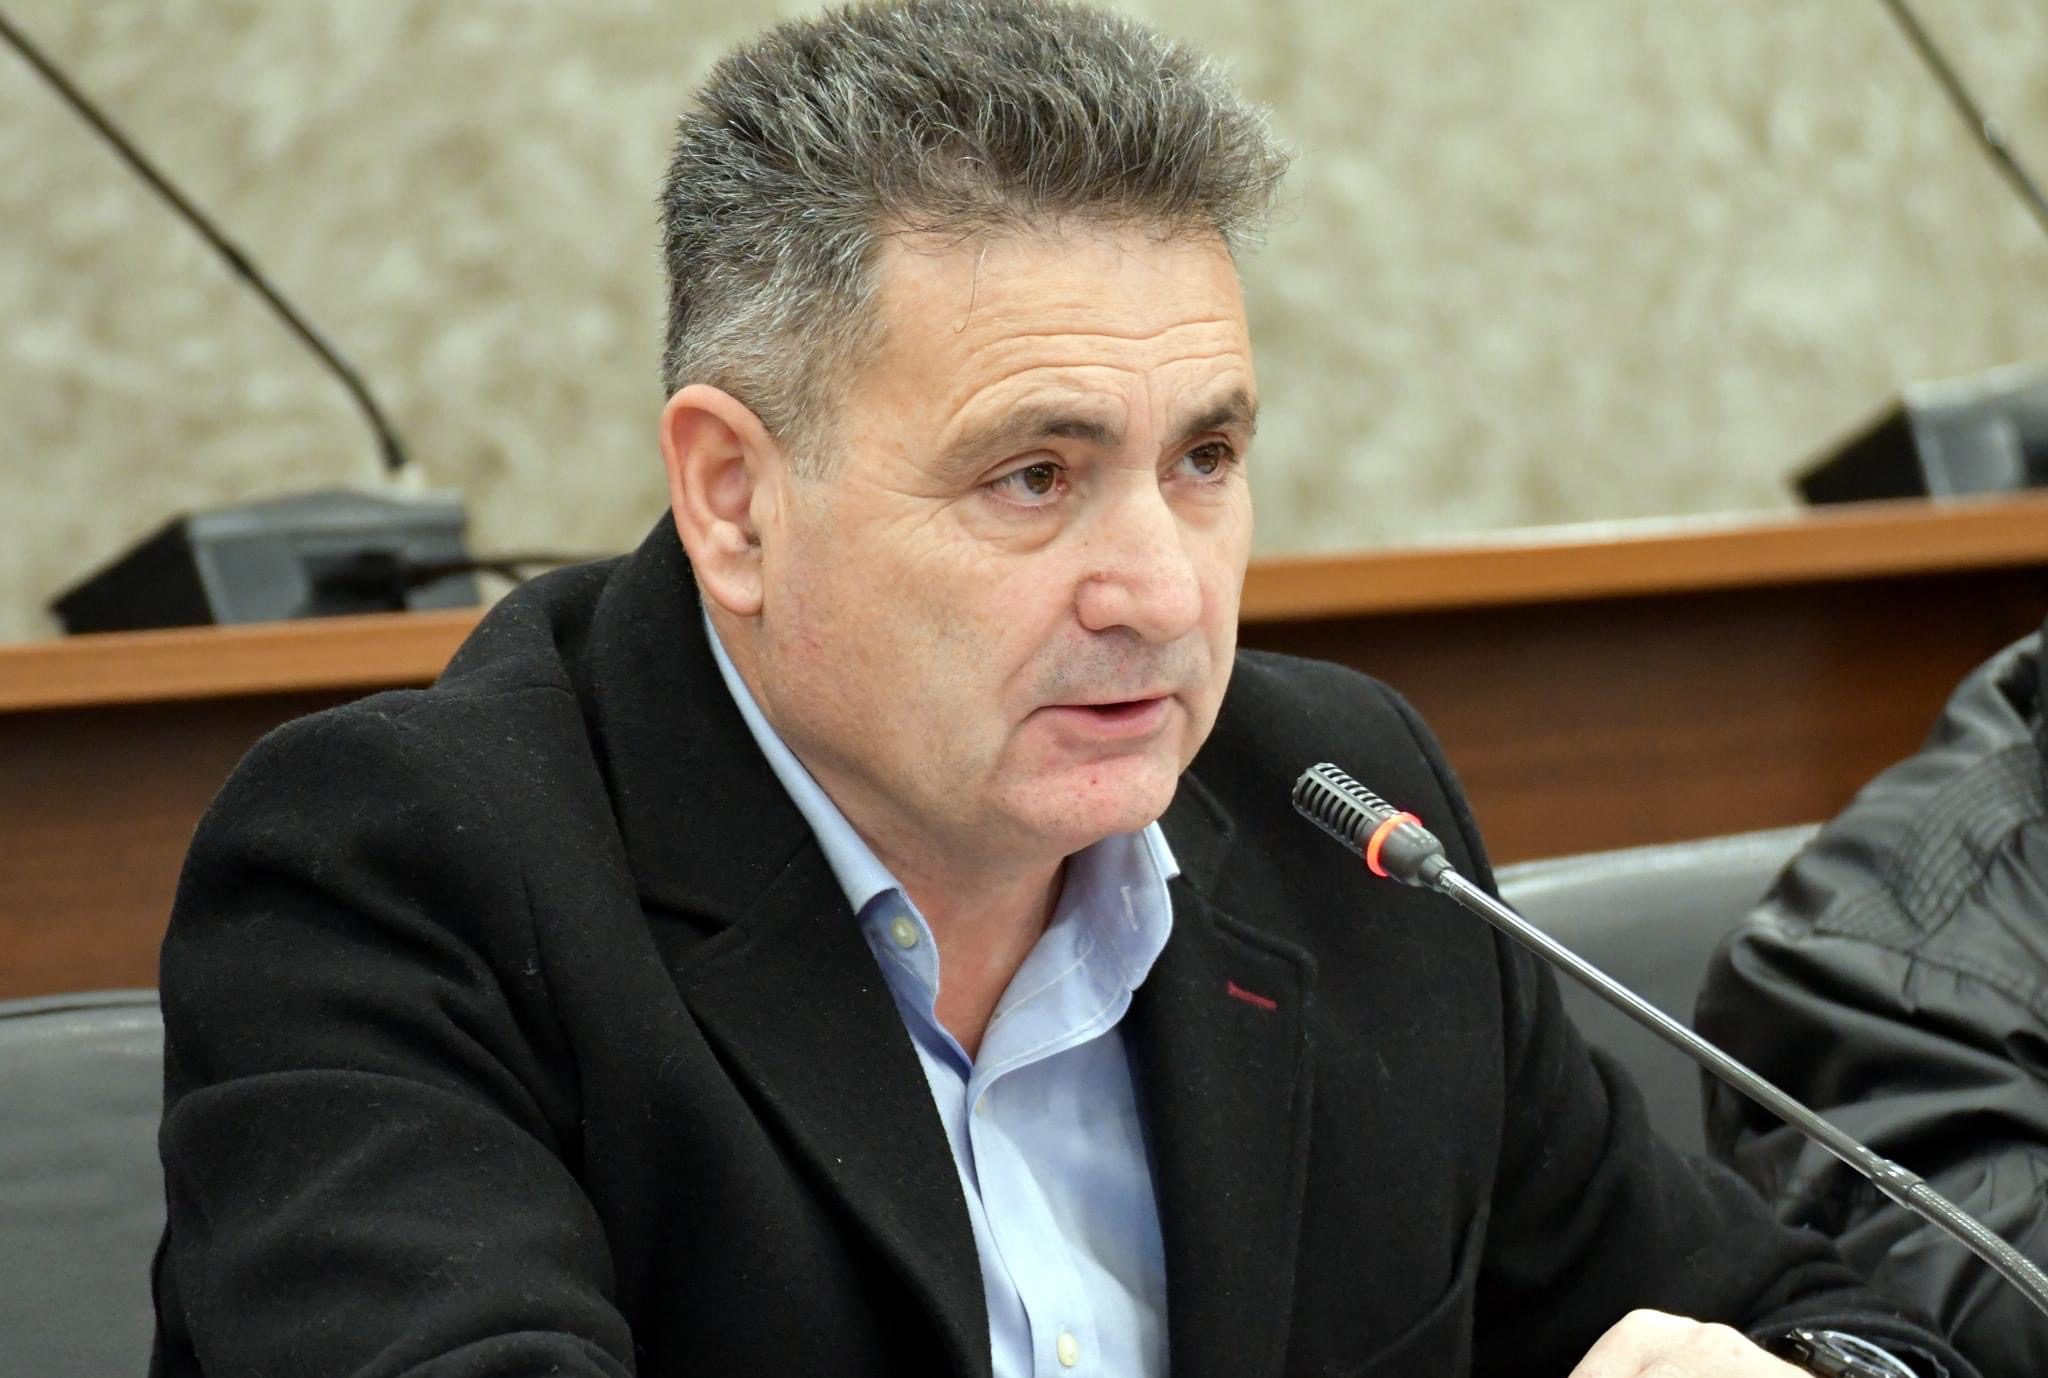 Εύβοια – Γιάννης Ρέτσας: Ο πρόεδρος που άλλαξε την ΕΠΣ έκοψε πίτες για όλα τα σωματεία